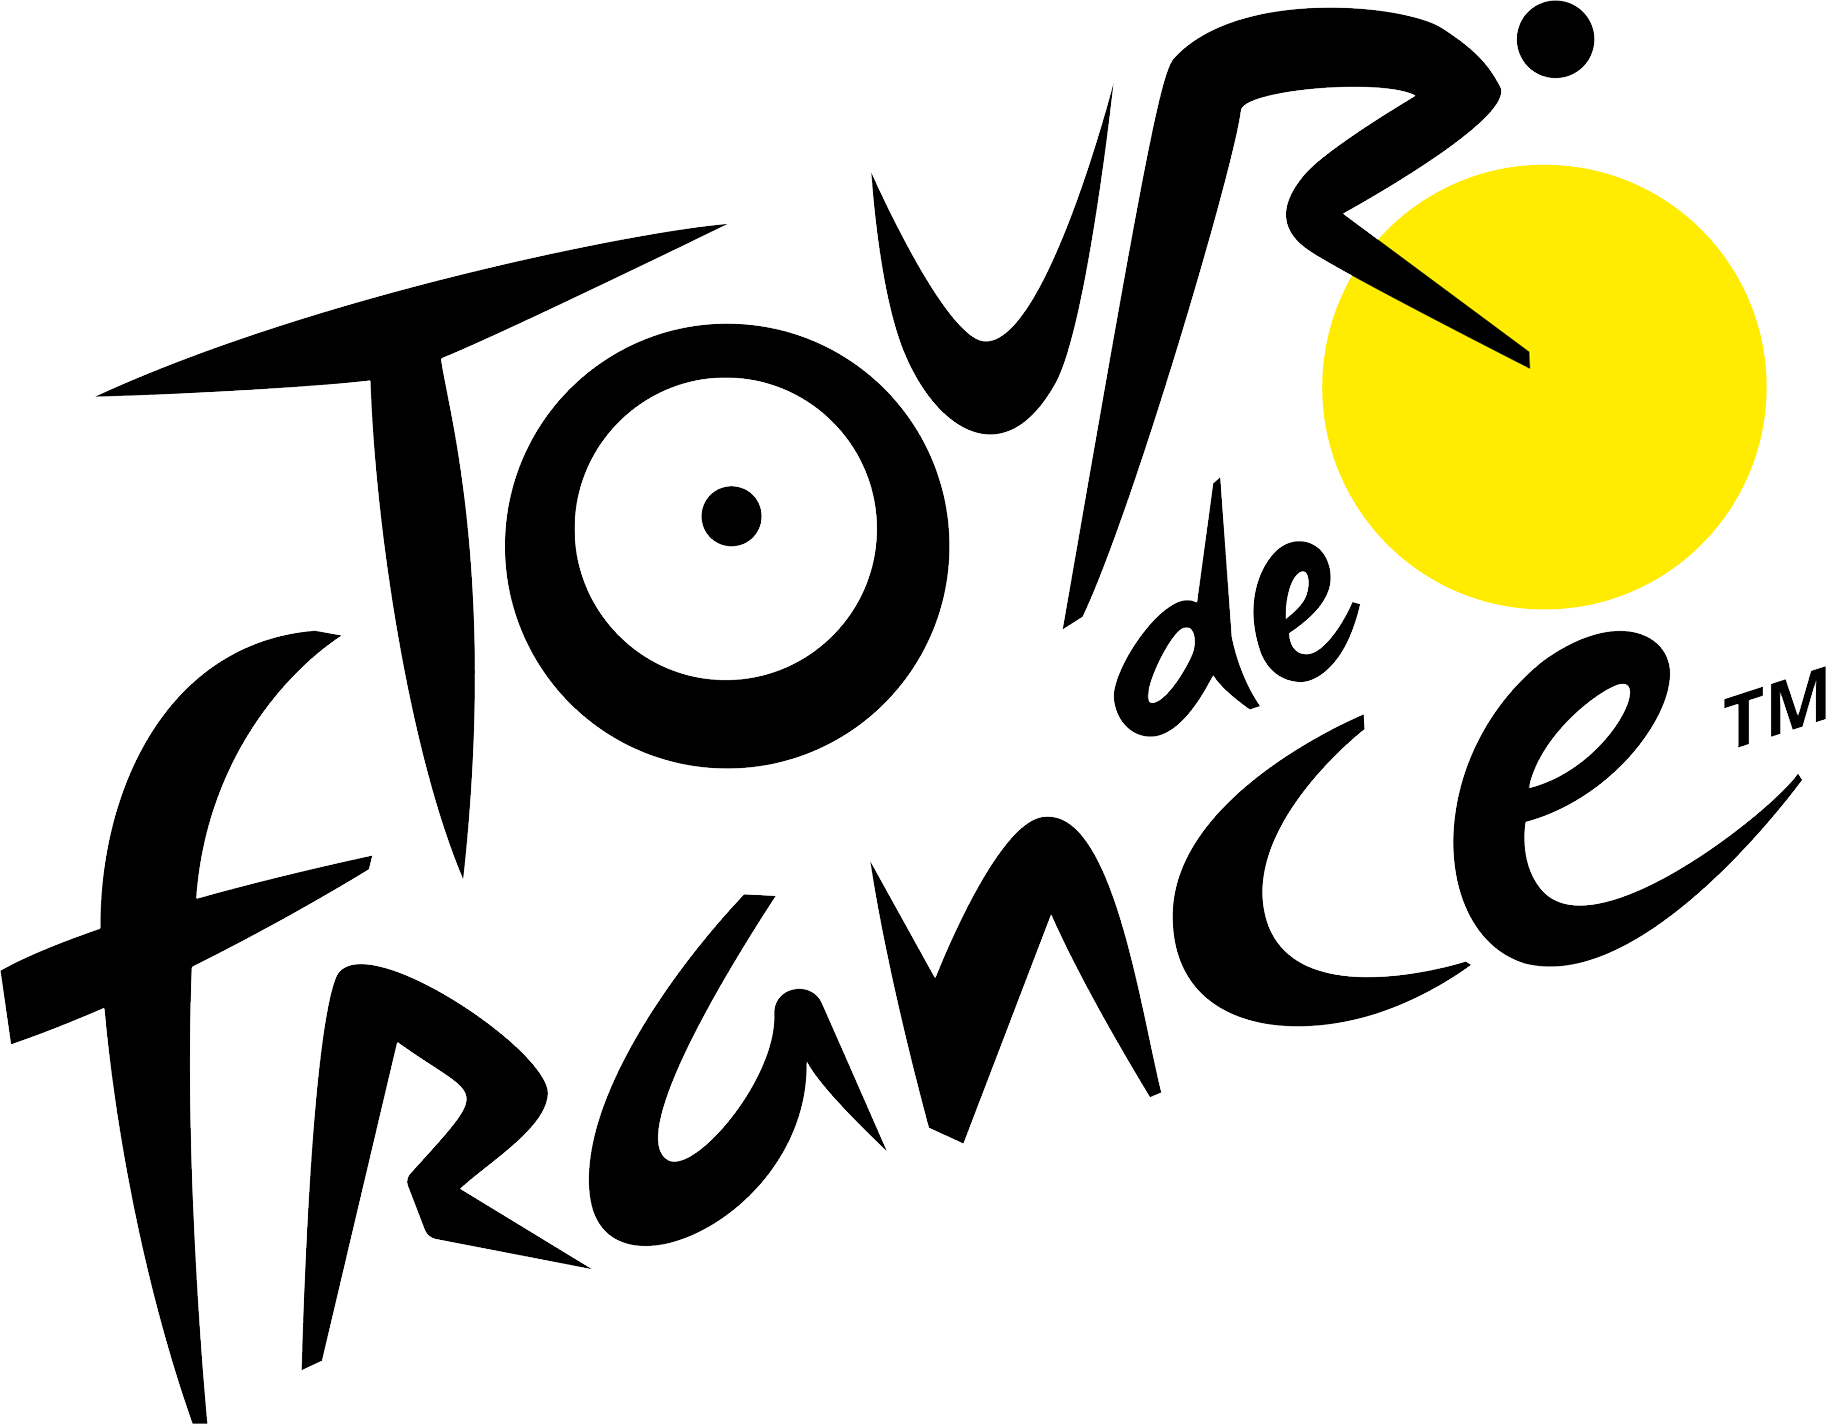 Tour de France logo PNG.